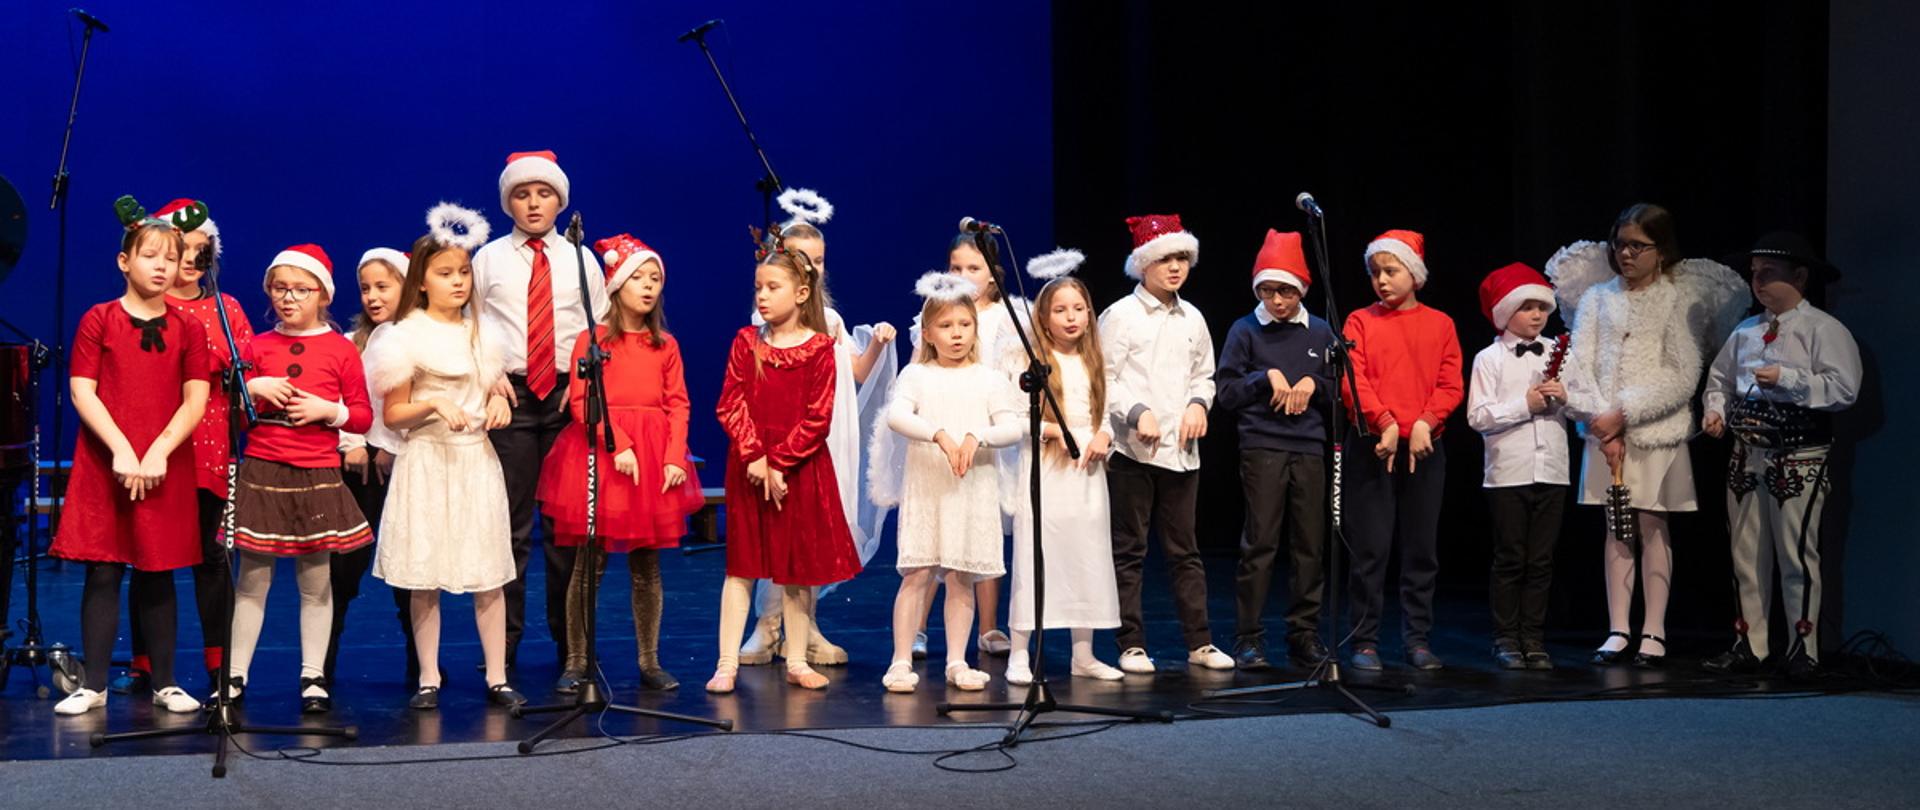 Zdjęcie grupowe, na scenie uczniowie ubrani w świąteczne ubrania stoją w dwóch rzędach. Przed nimi statywy z mikrofonami.